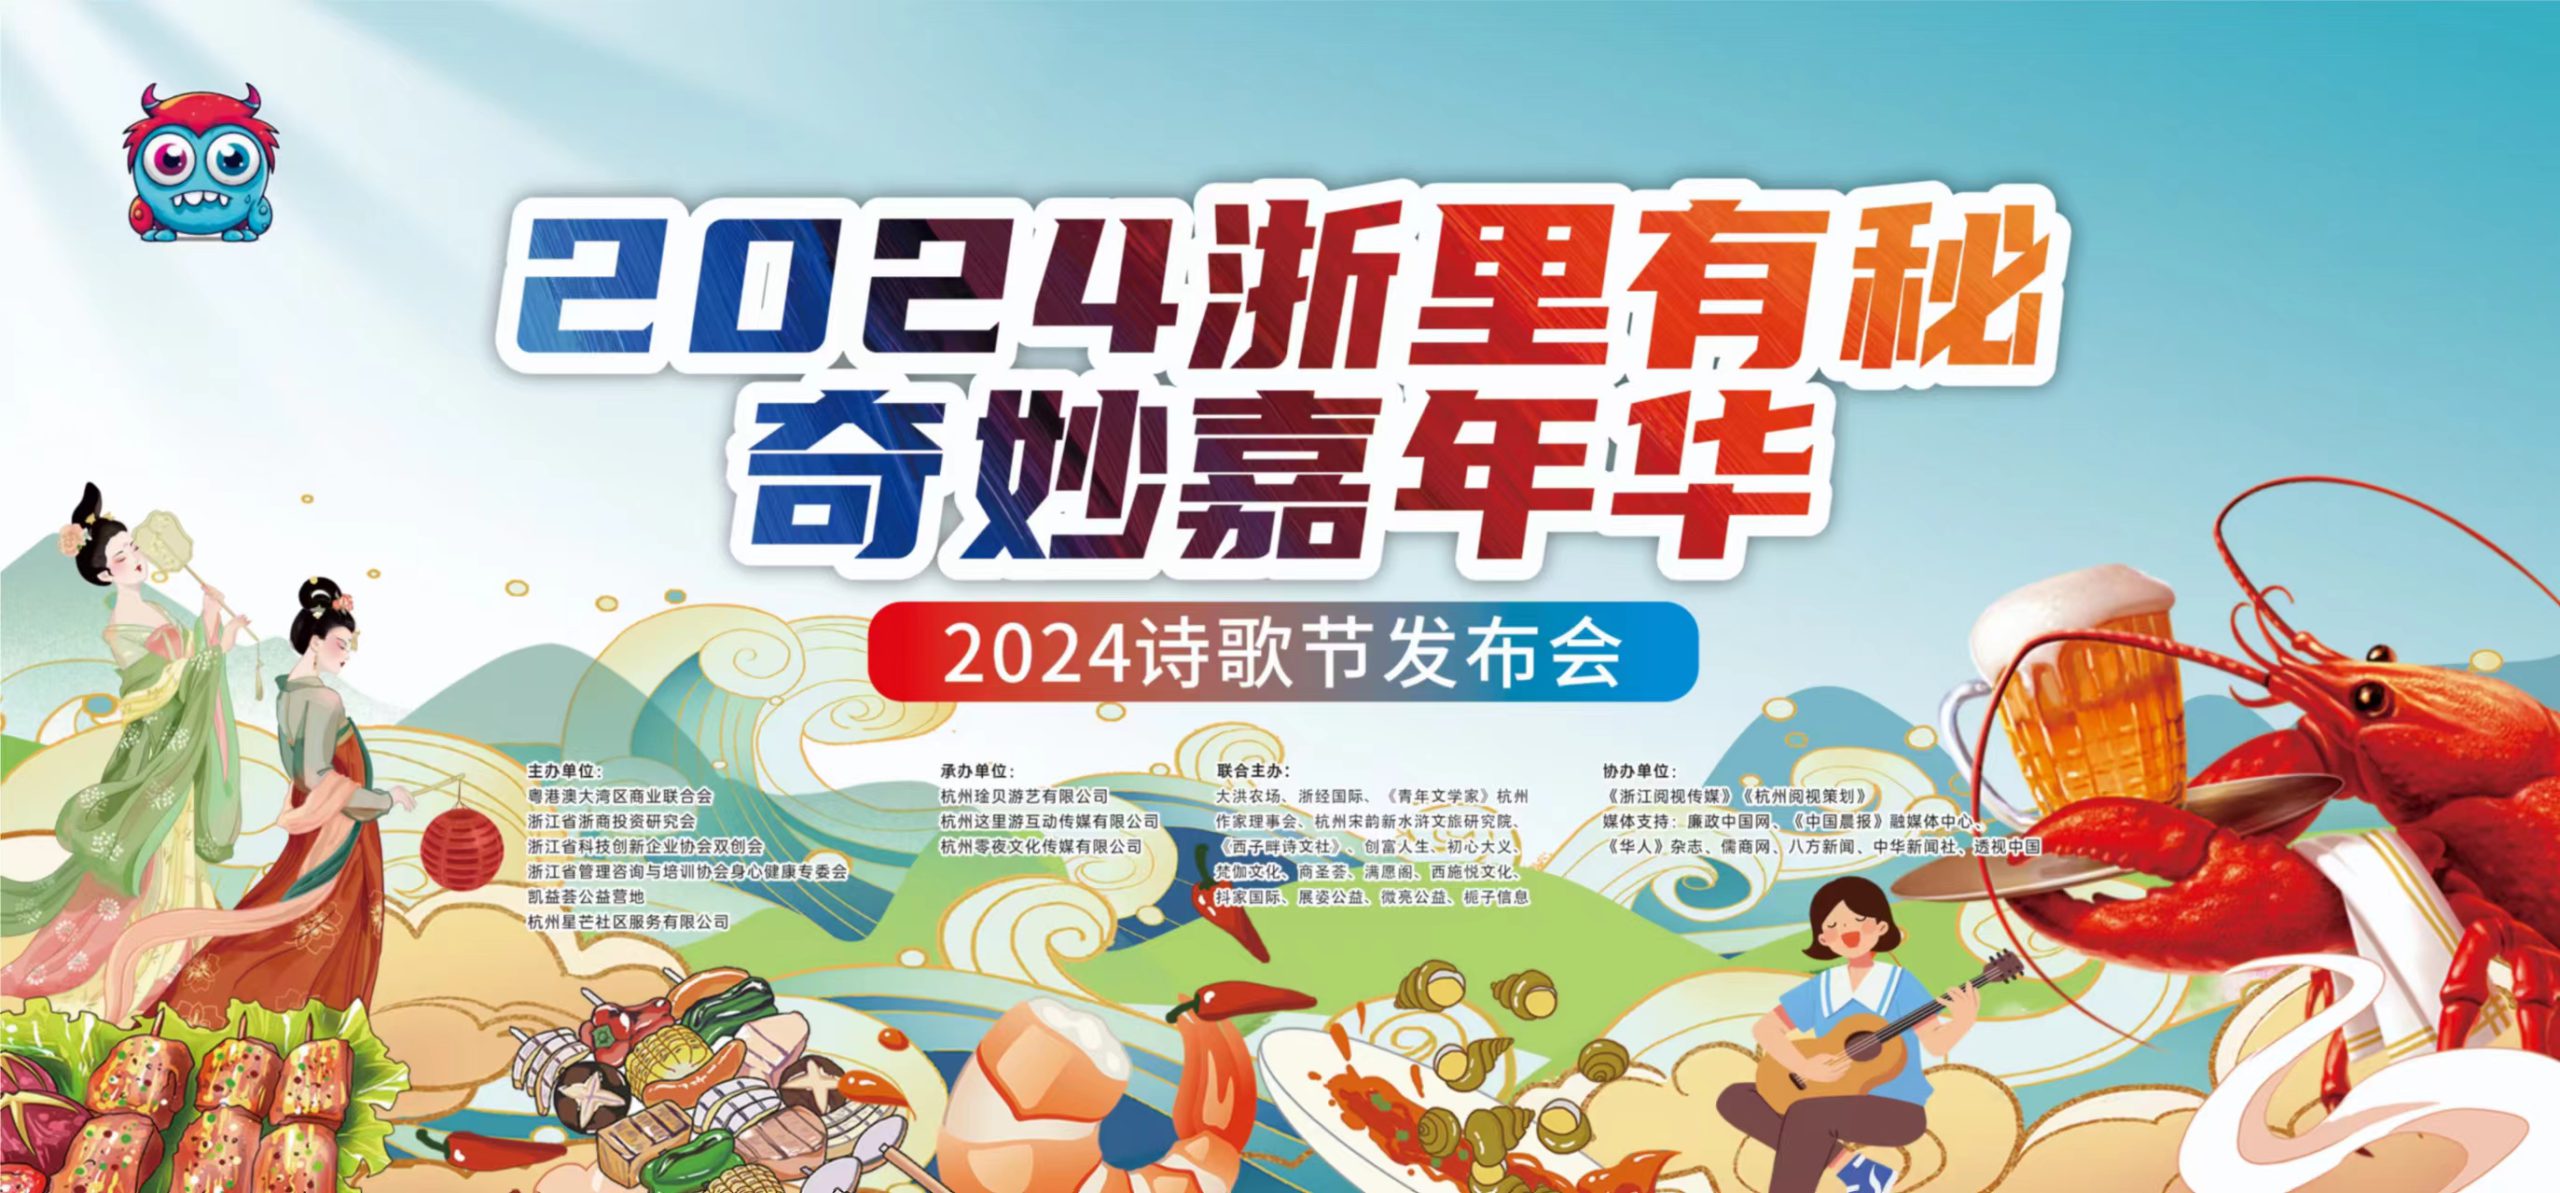 2024浙里有秘奇妙嘉年华暨2024年国际疗愈文化节在杭州盛大开幕（记者 方为亮 摄）